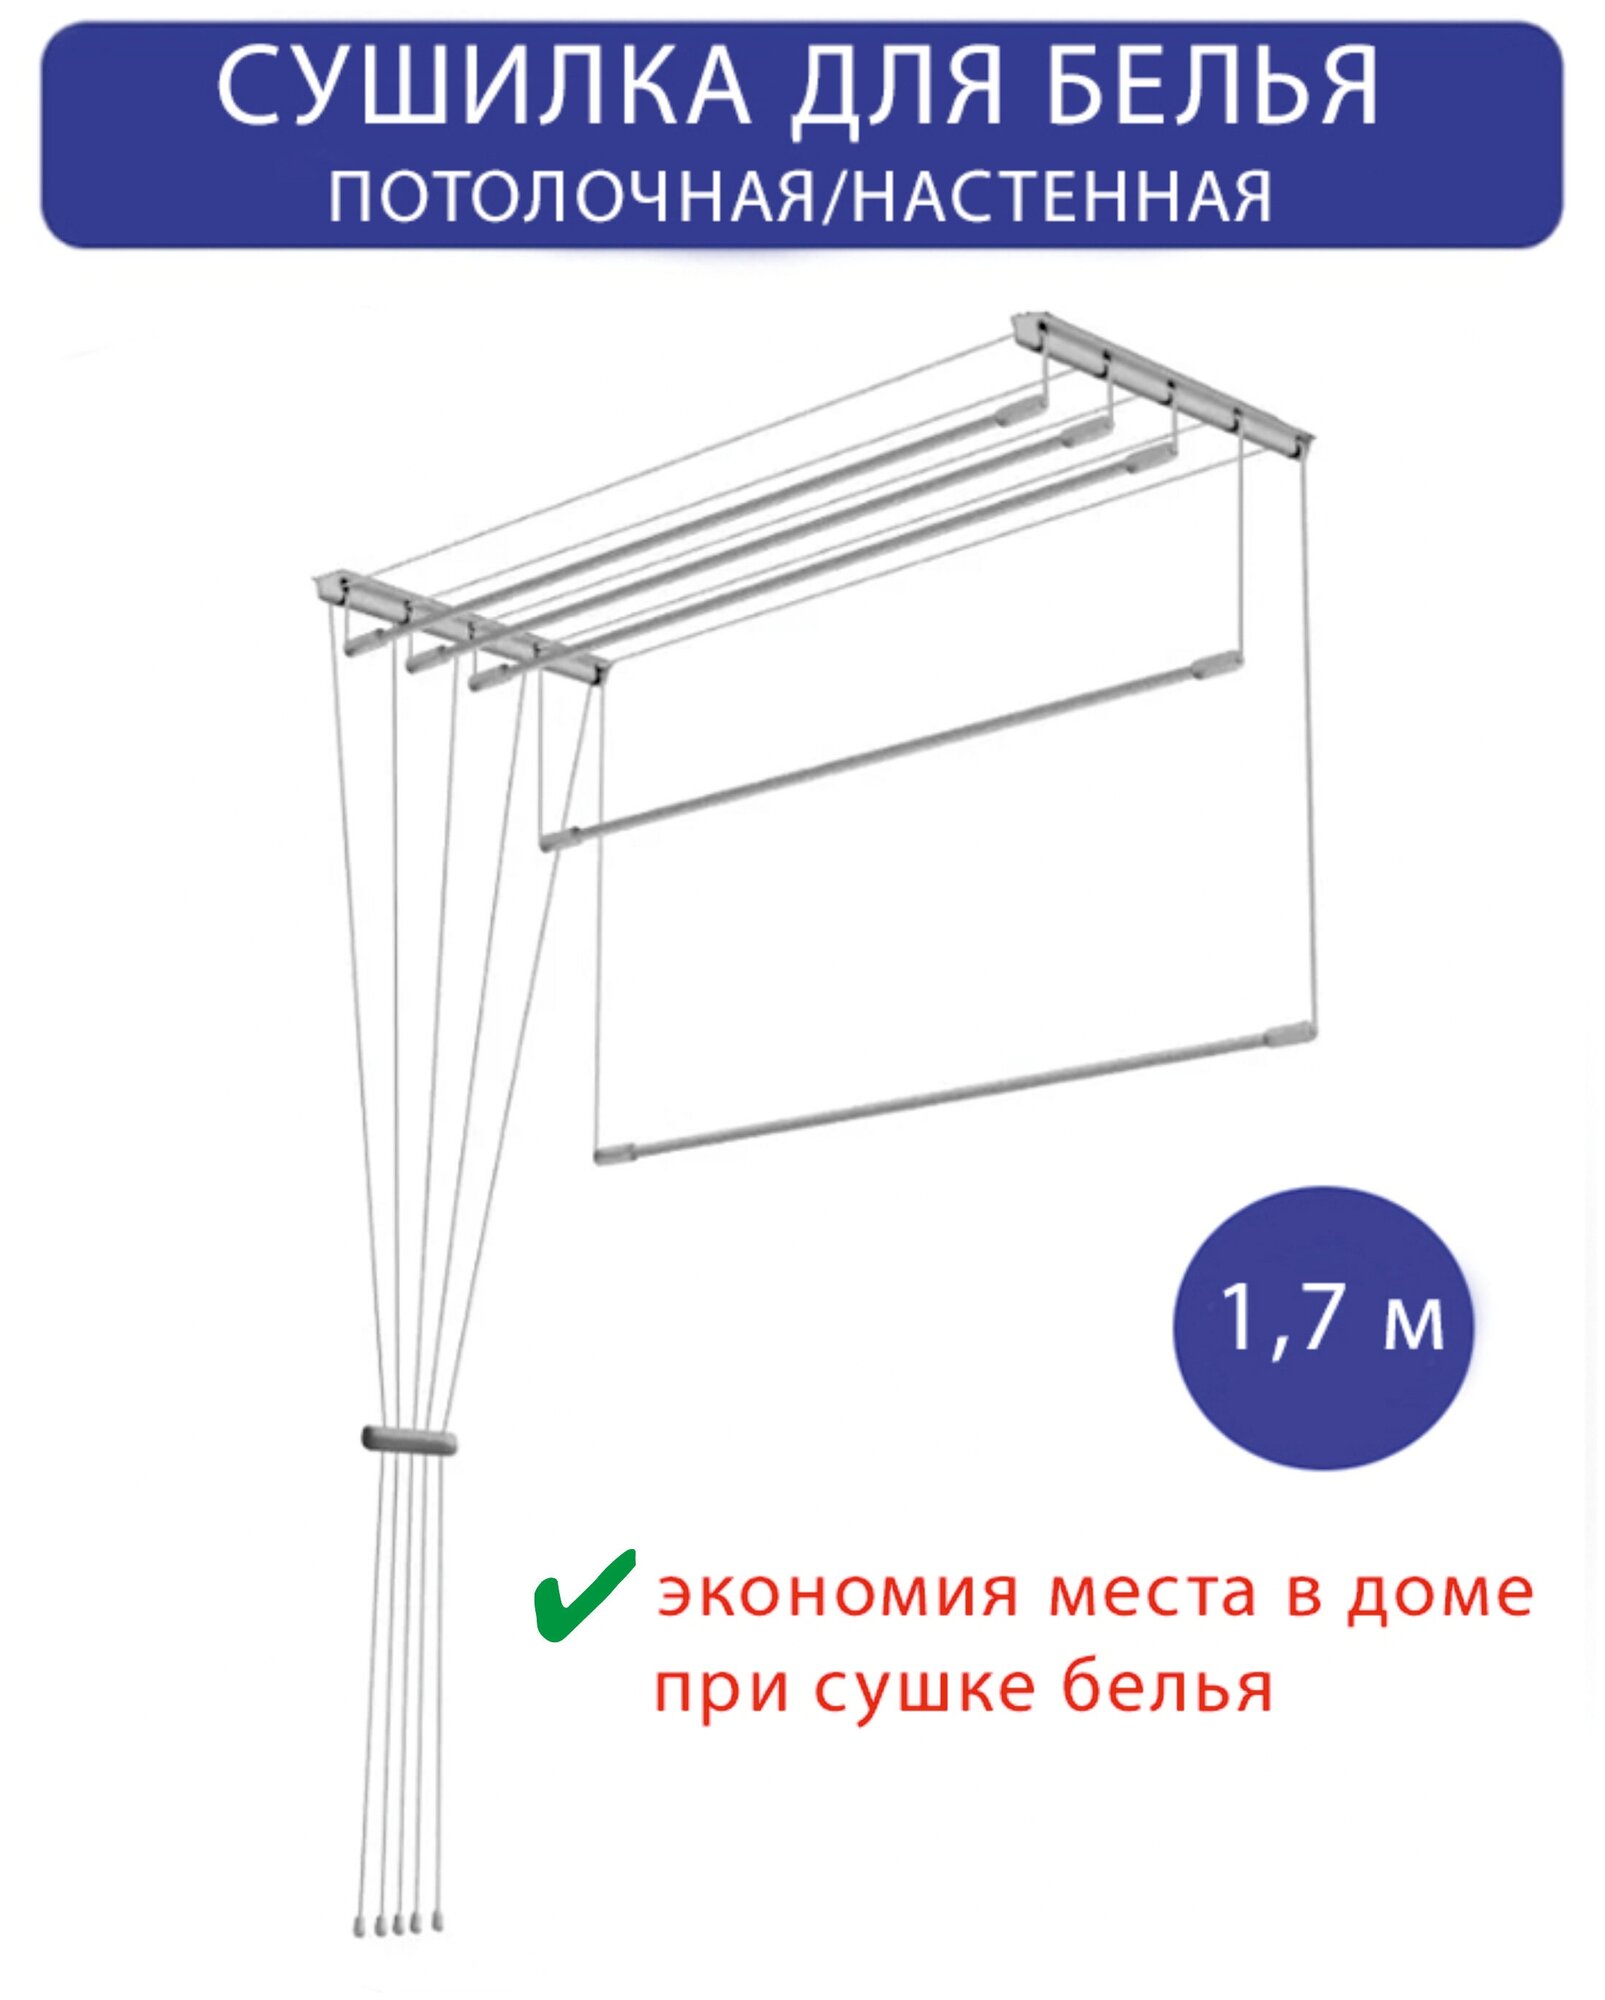 Сушилка для белья настенная/потолочная в ванную или балкон, 1,7м